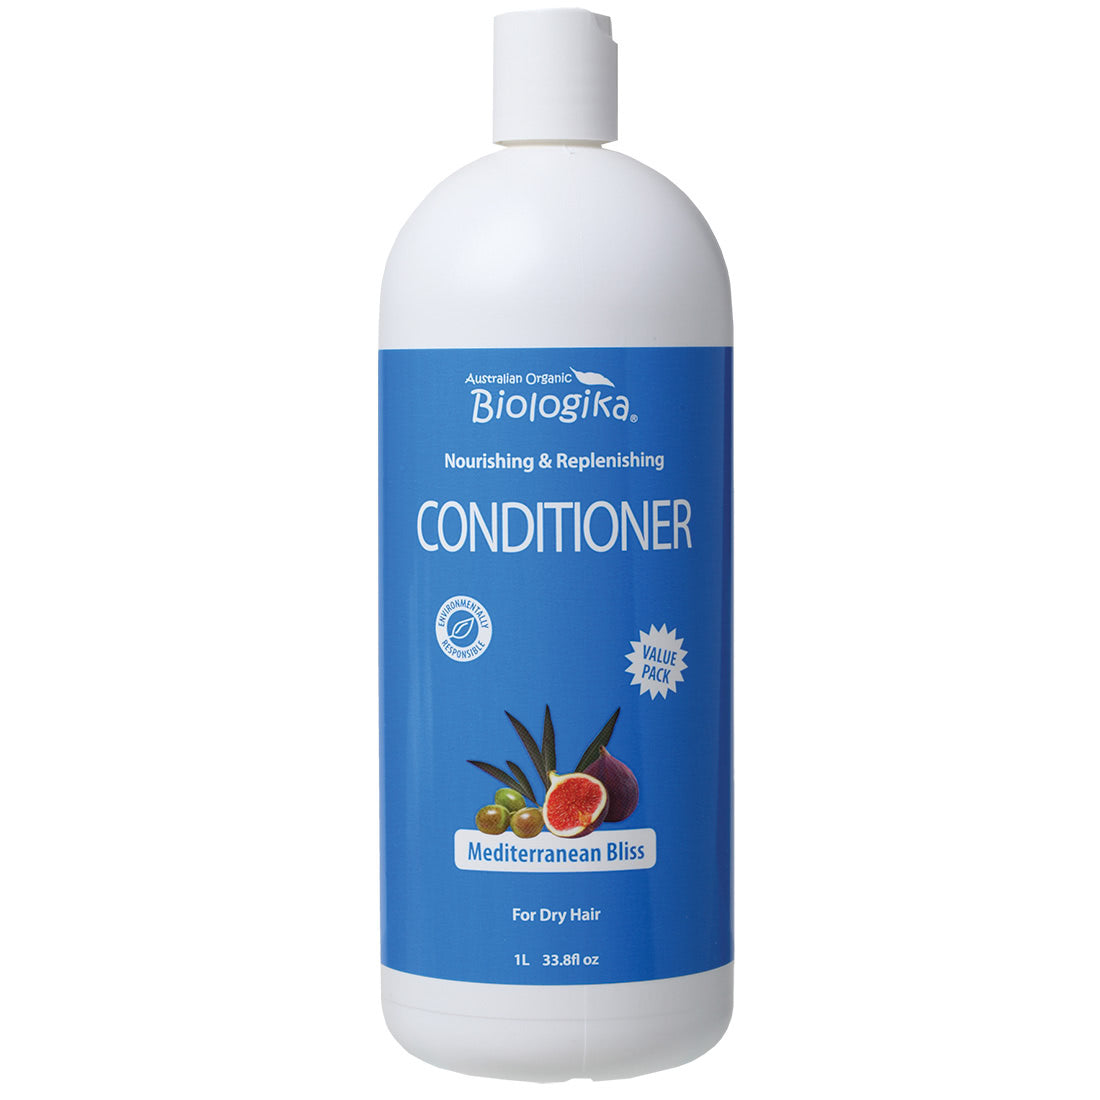 Biologika - Conditioner (Mediterranean Bliss)